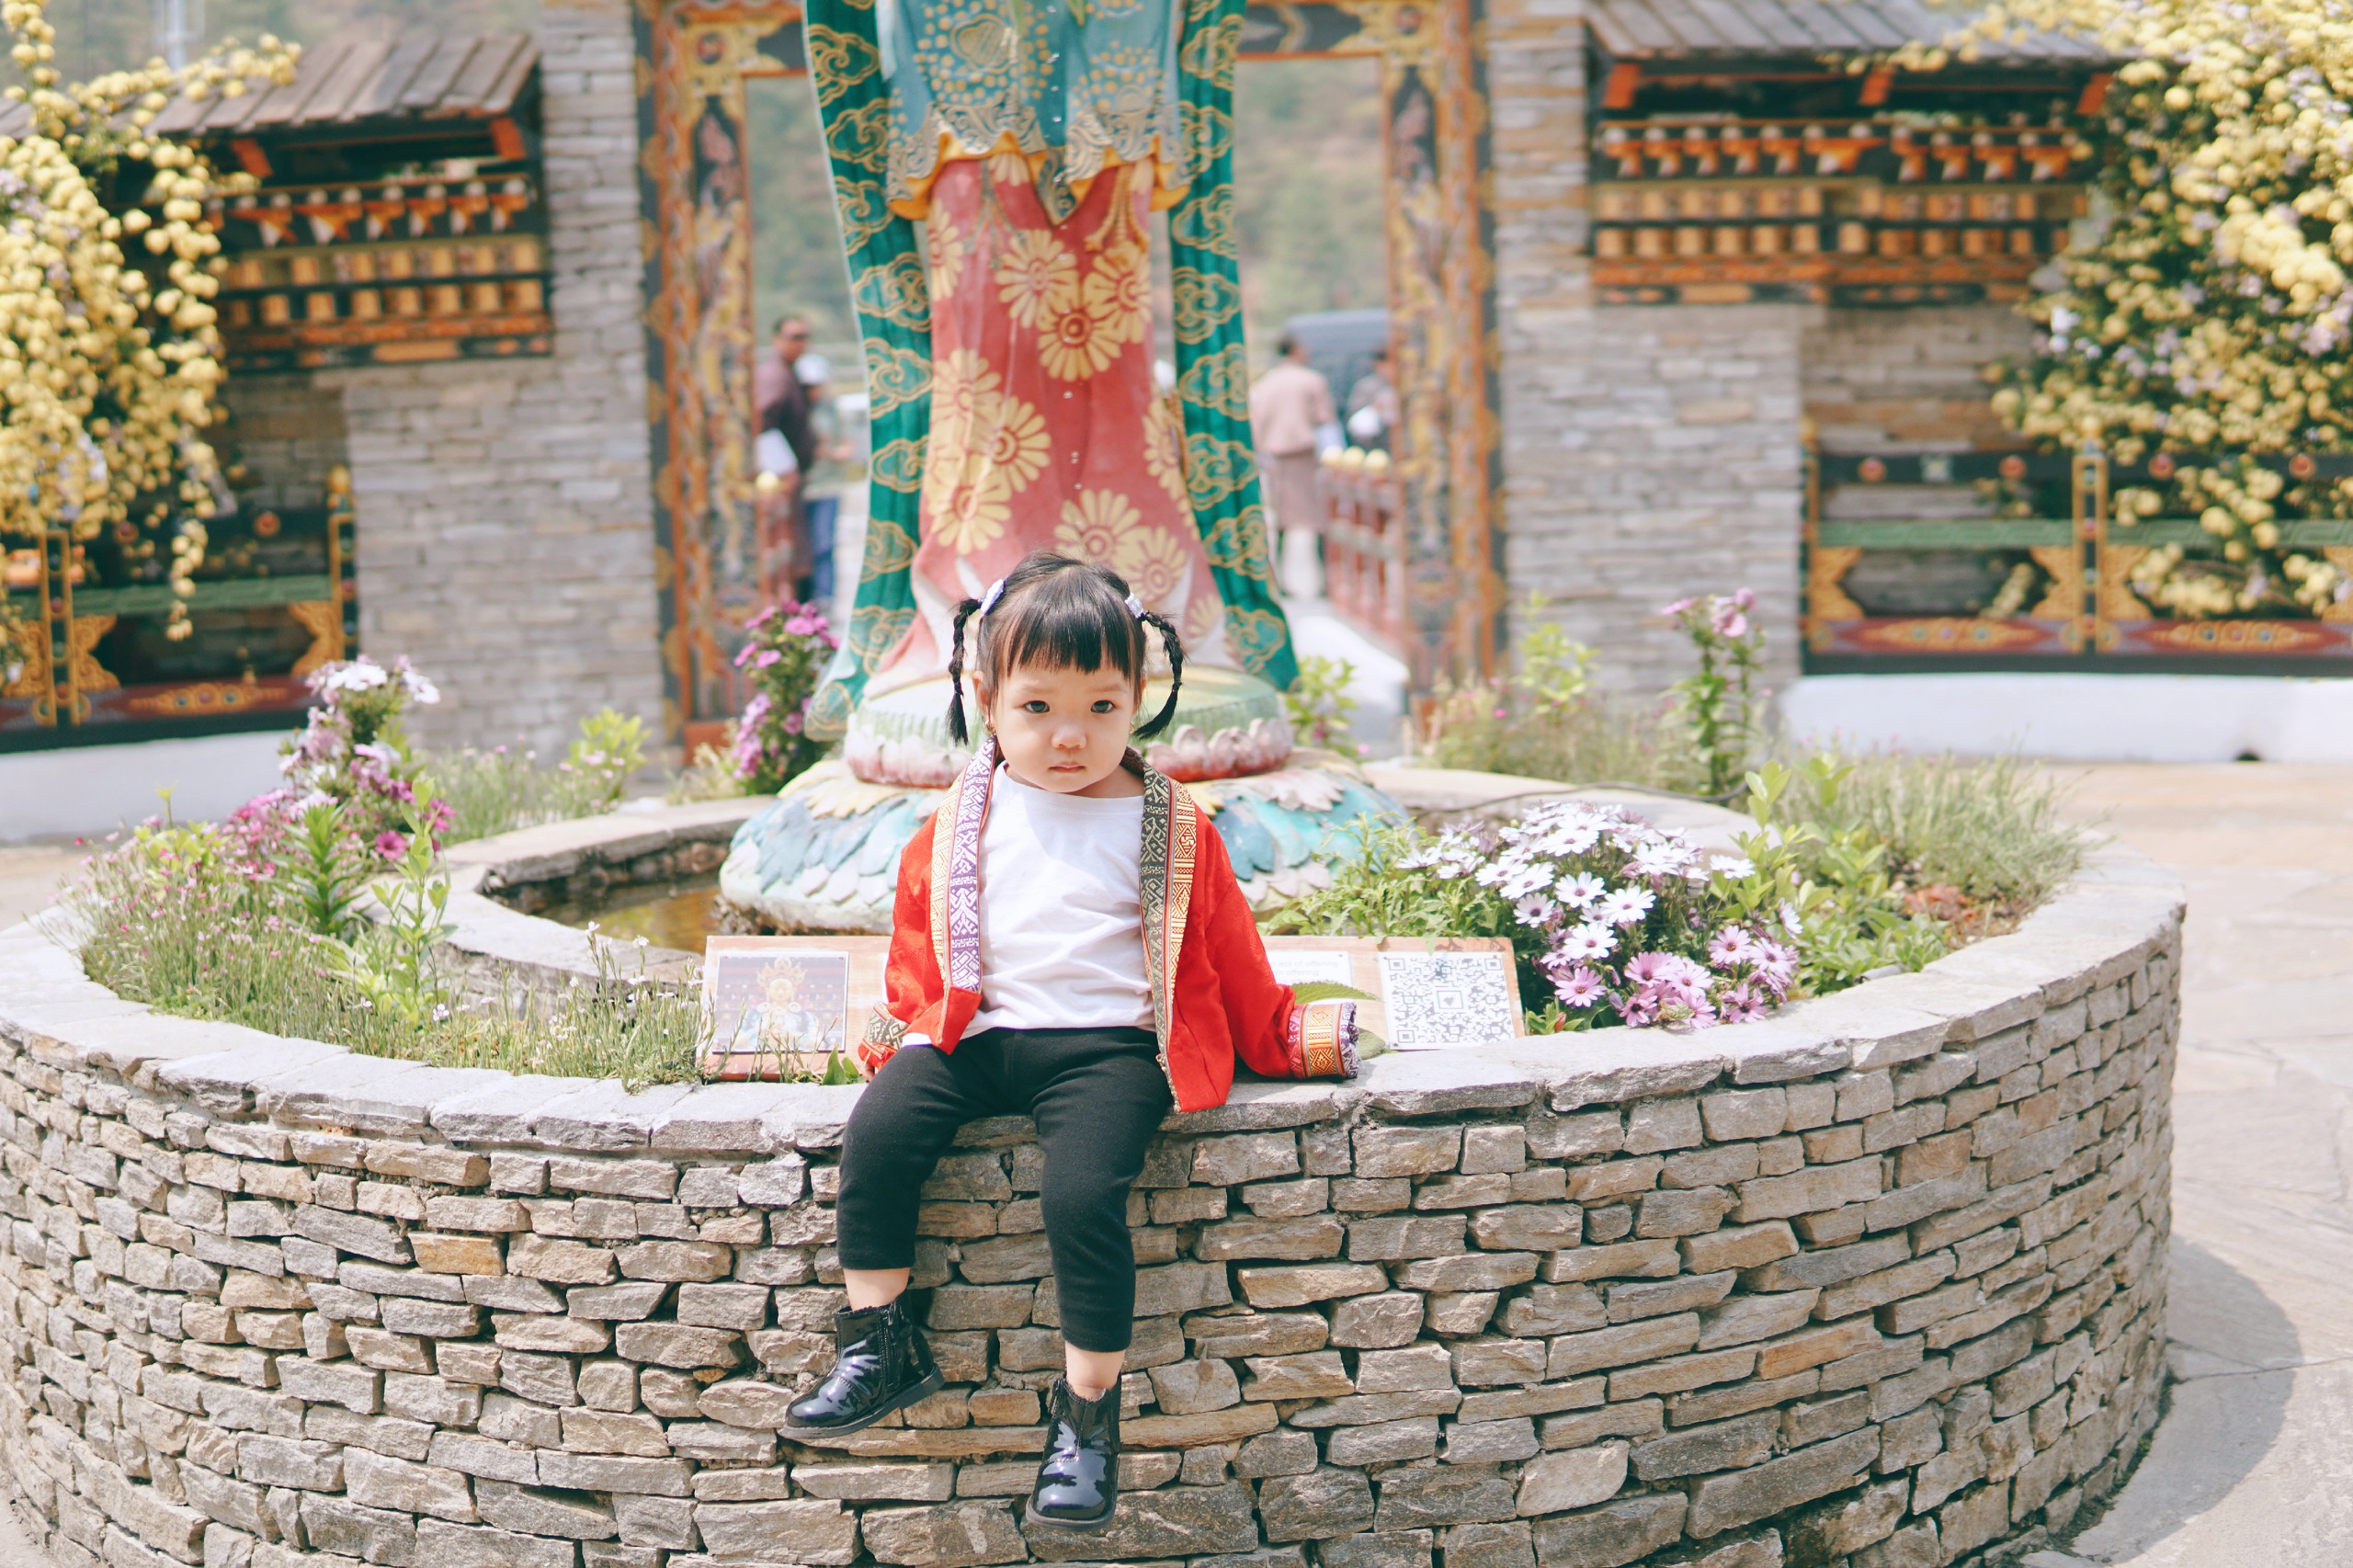 Trải nghiệm đầu đời đáng nhớ ở xứ sở hạnh phúc Bhutan của em bé 19 tháng tuổi, ngắm ảnh ngỡ như một giấc mơ - Ảnh 7.